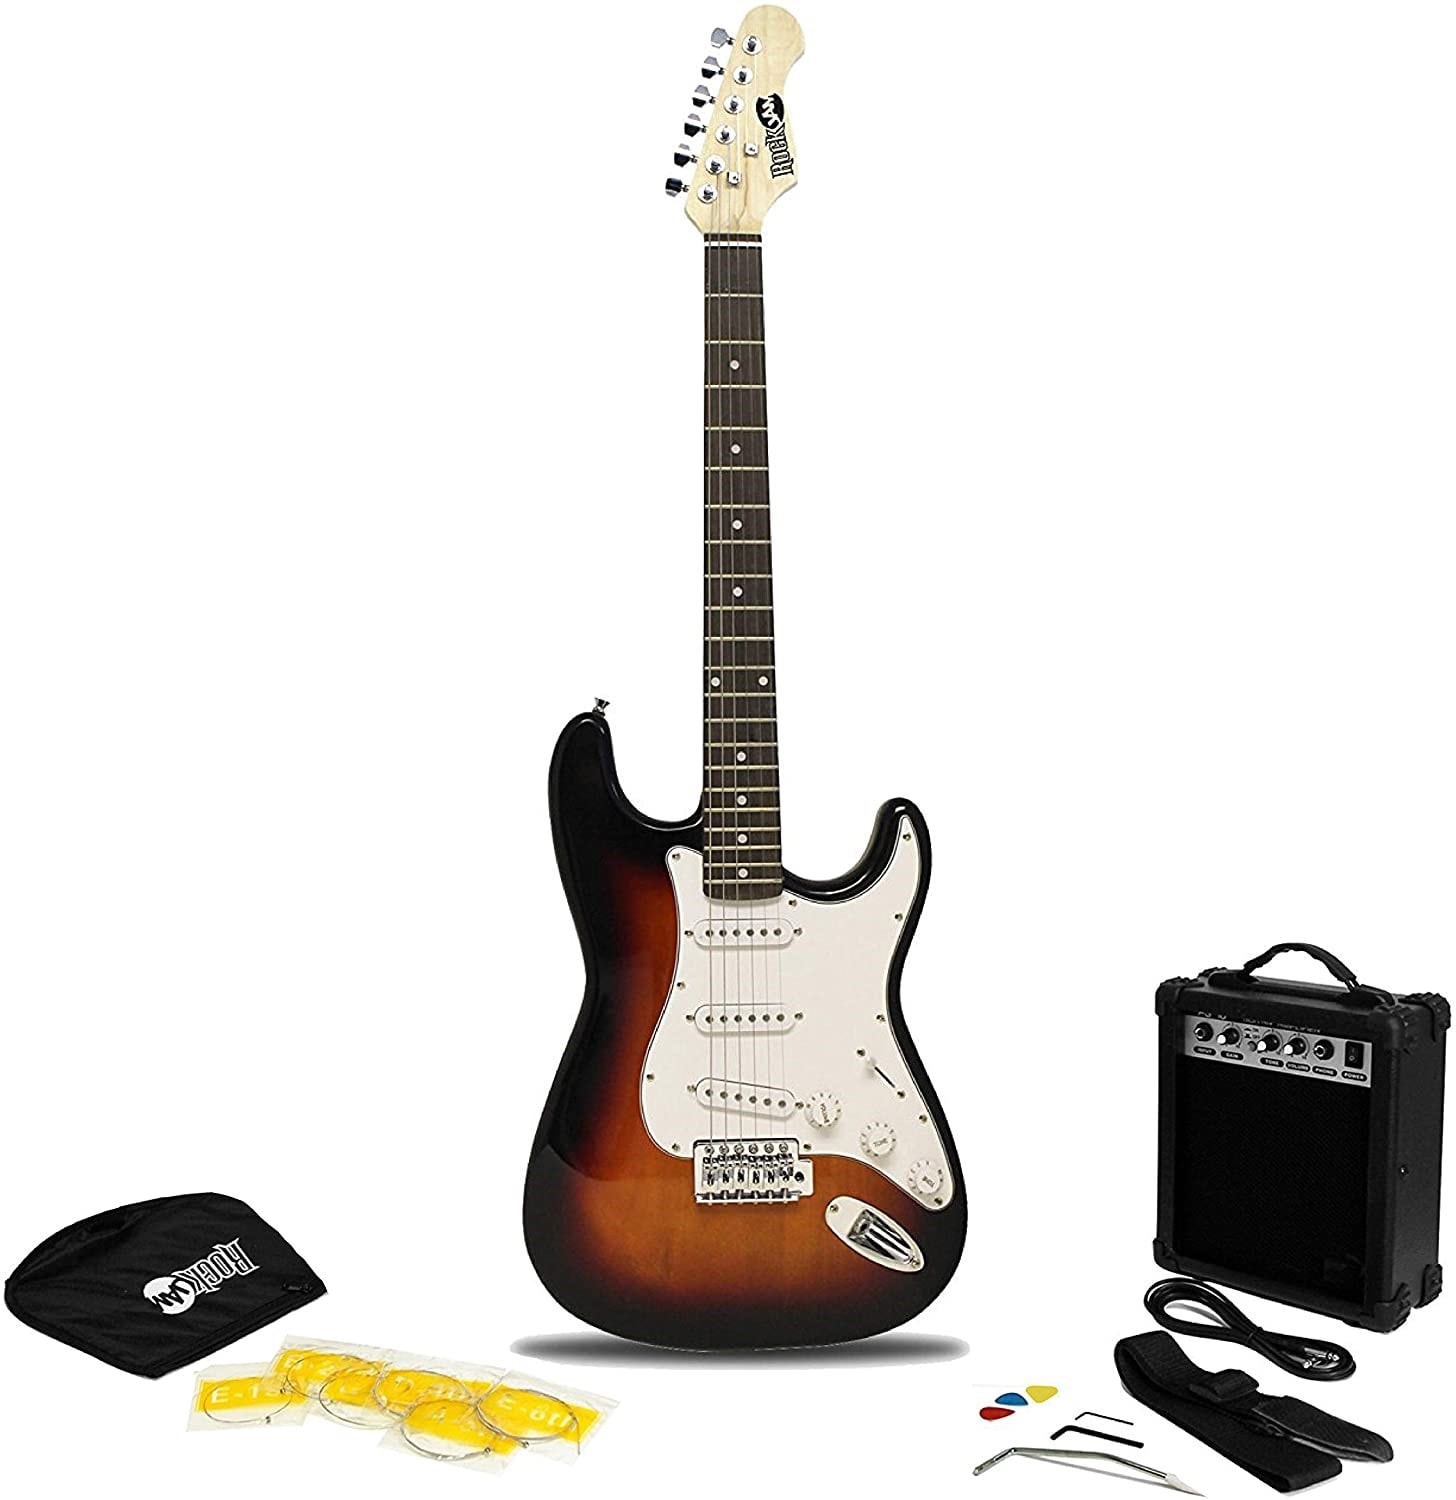 Ampli guitare bien le choisir pour sa guitare Fender ? 